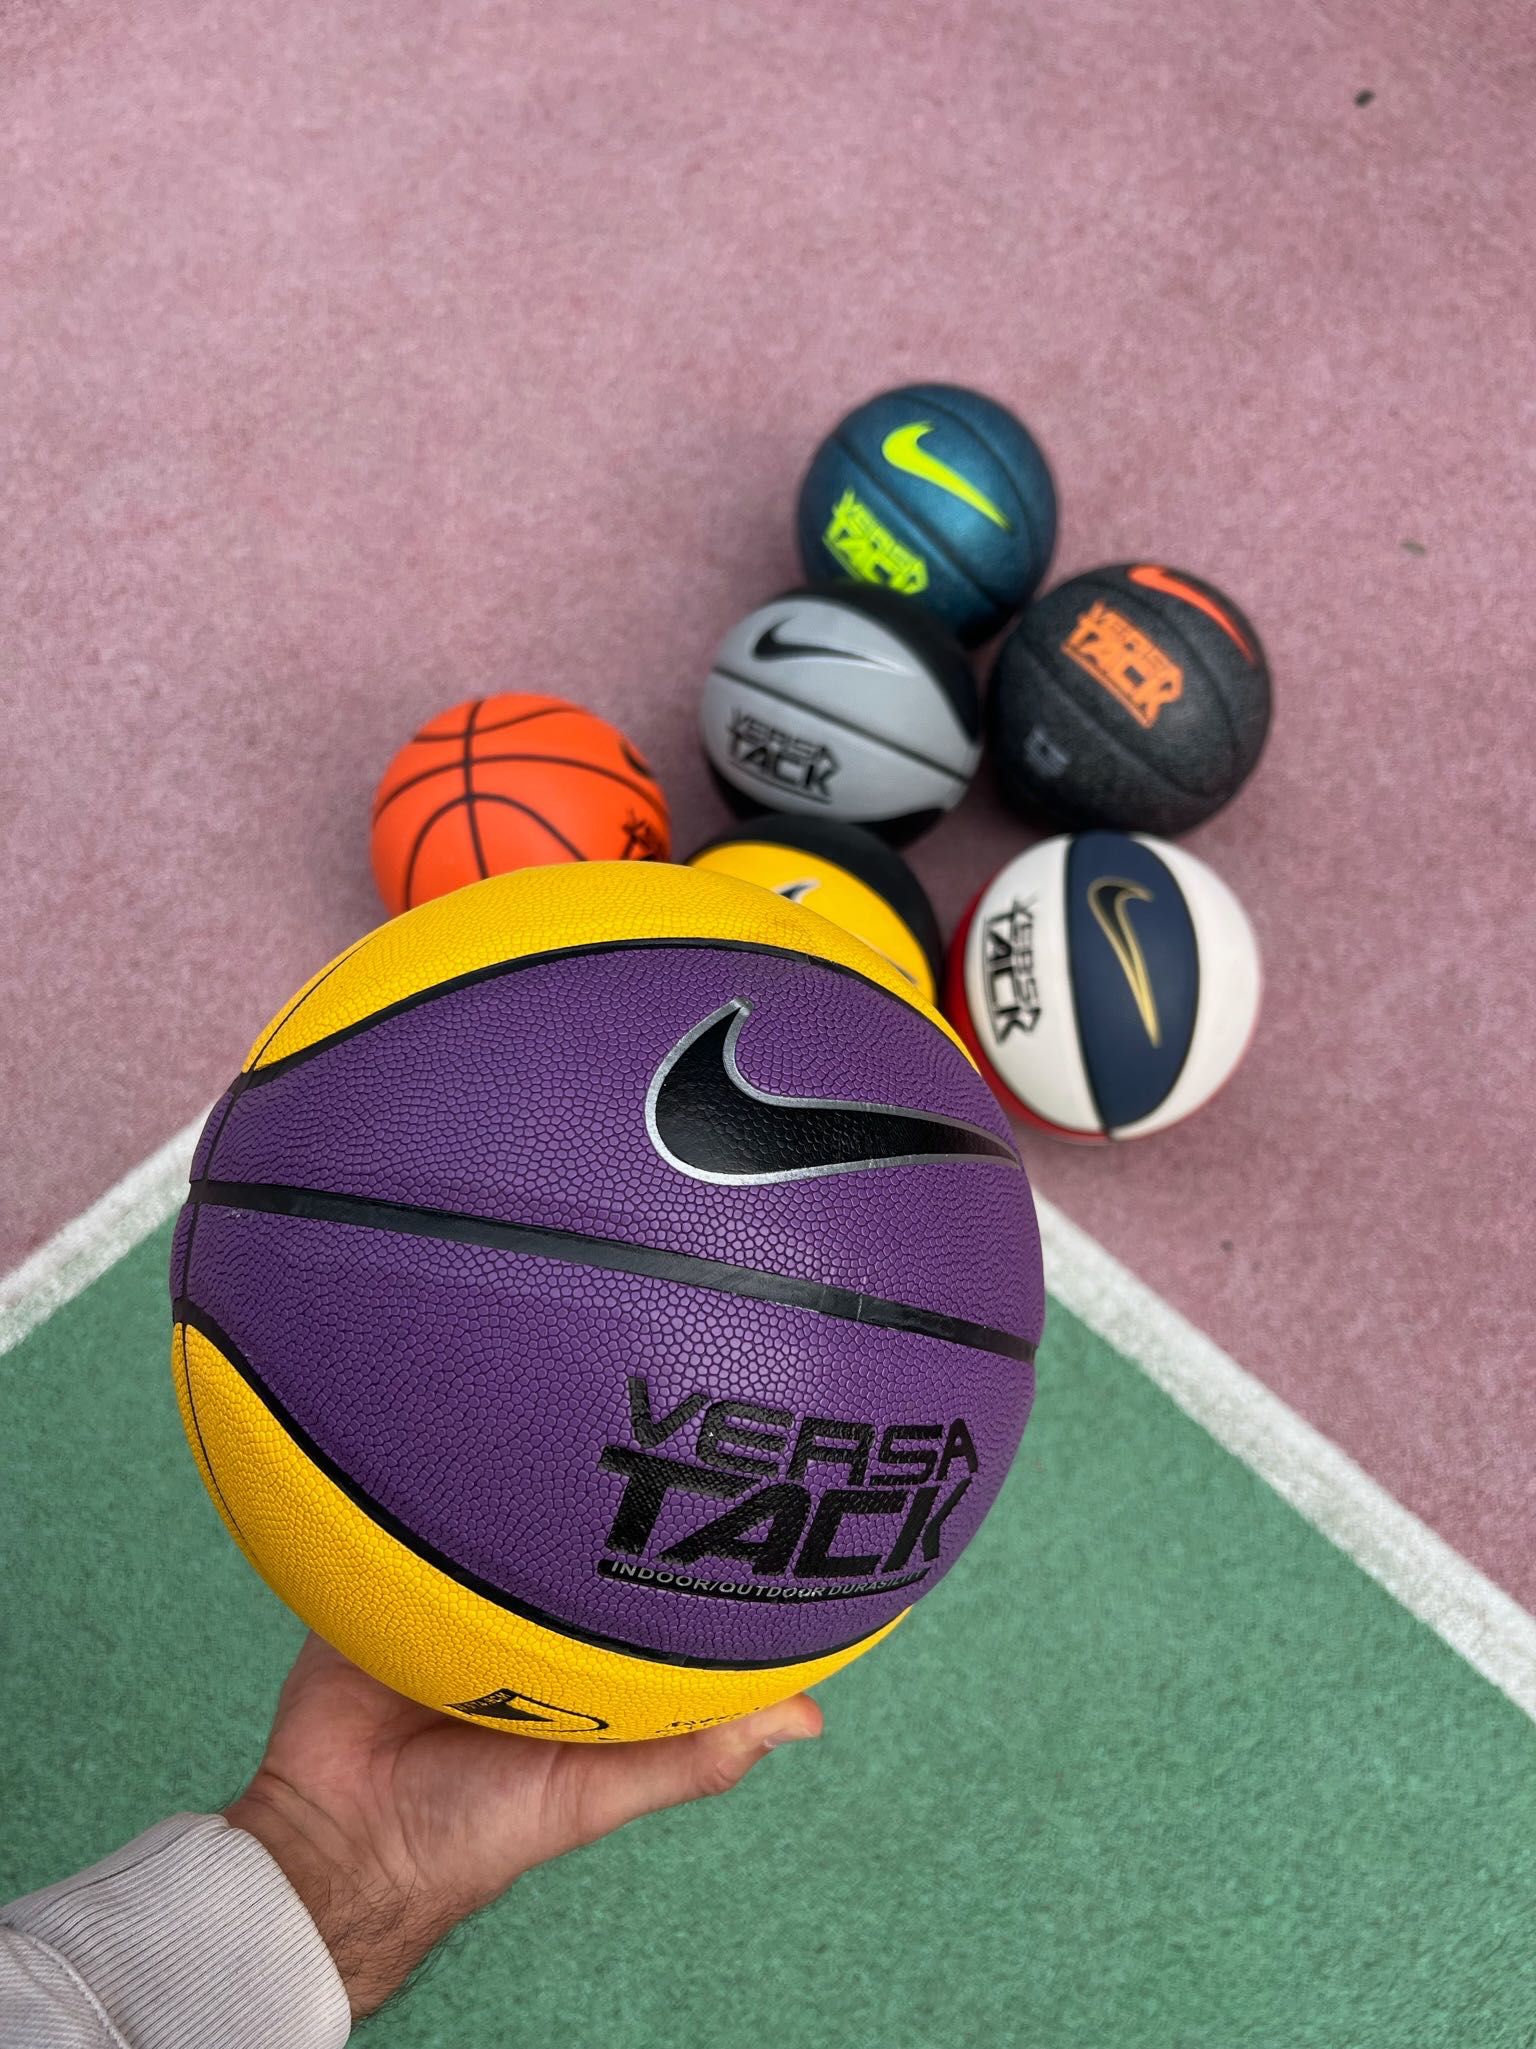 Баскетбольный мяч Nike Versa Tack размер 7. Оптом и в розницу в Алматы